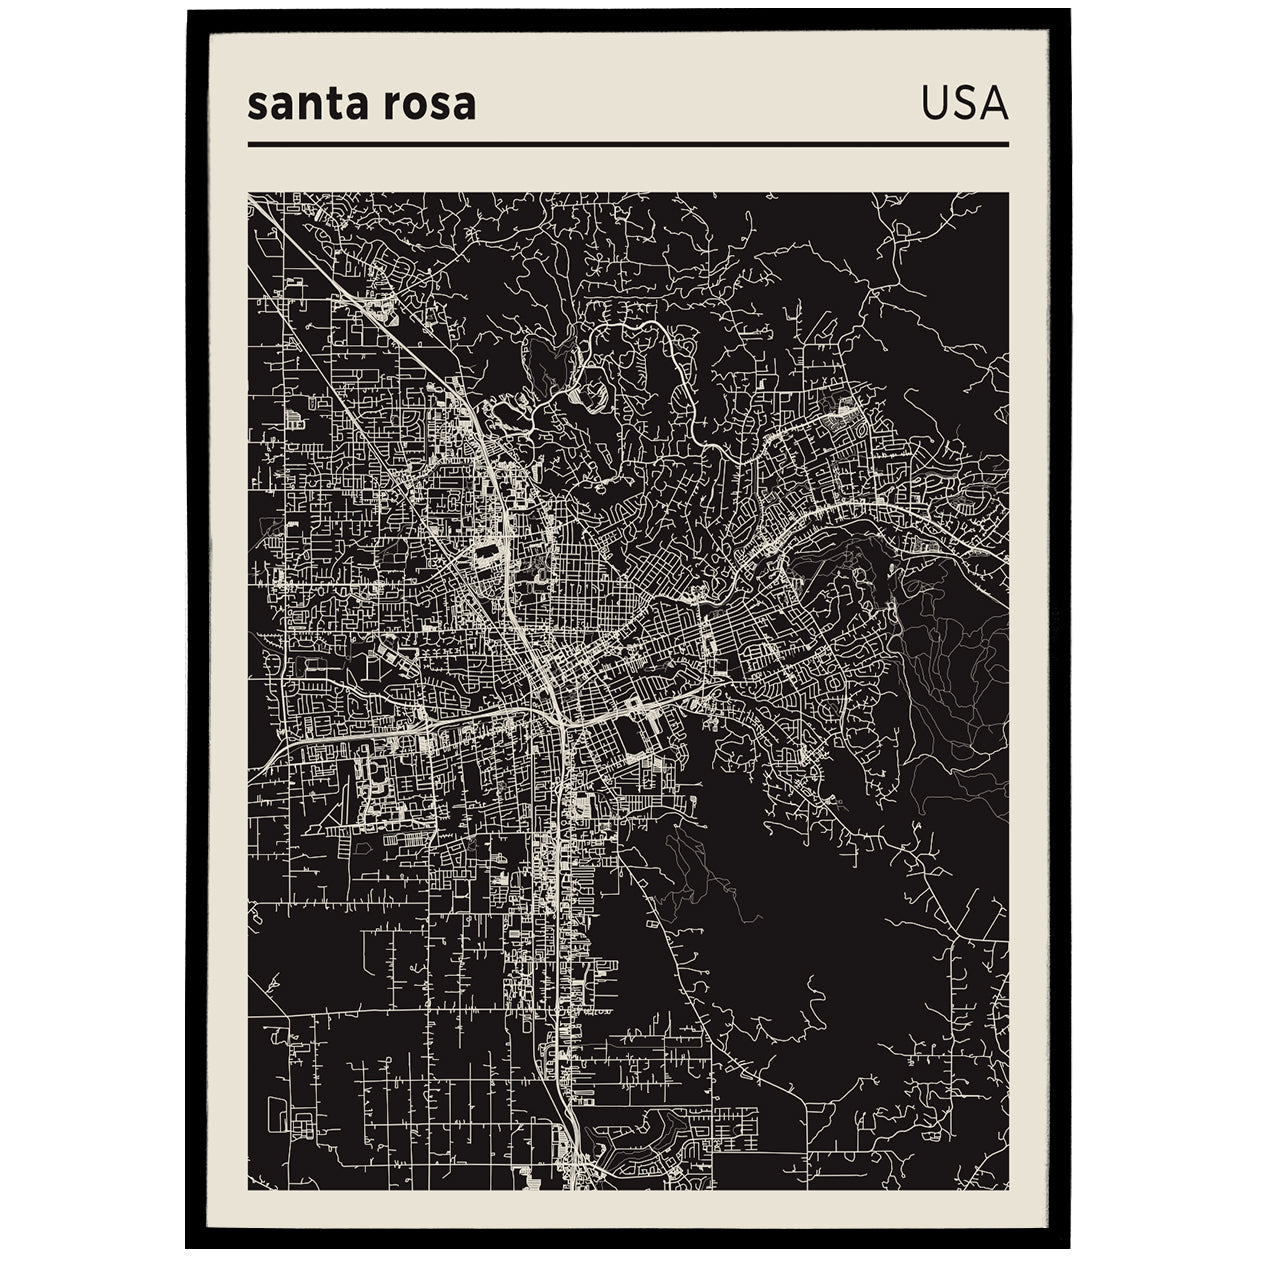 Santa Rosa, USA - City Map Poster